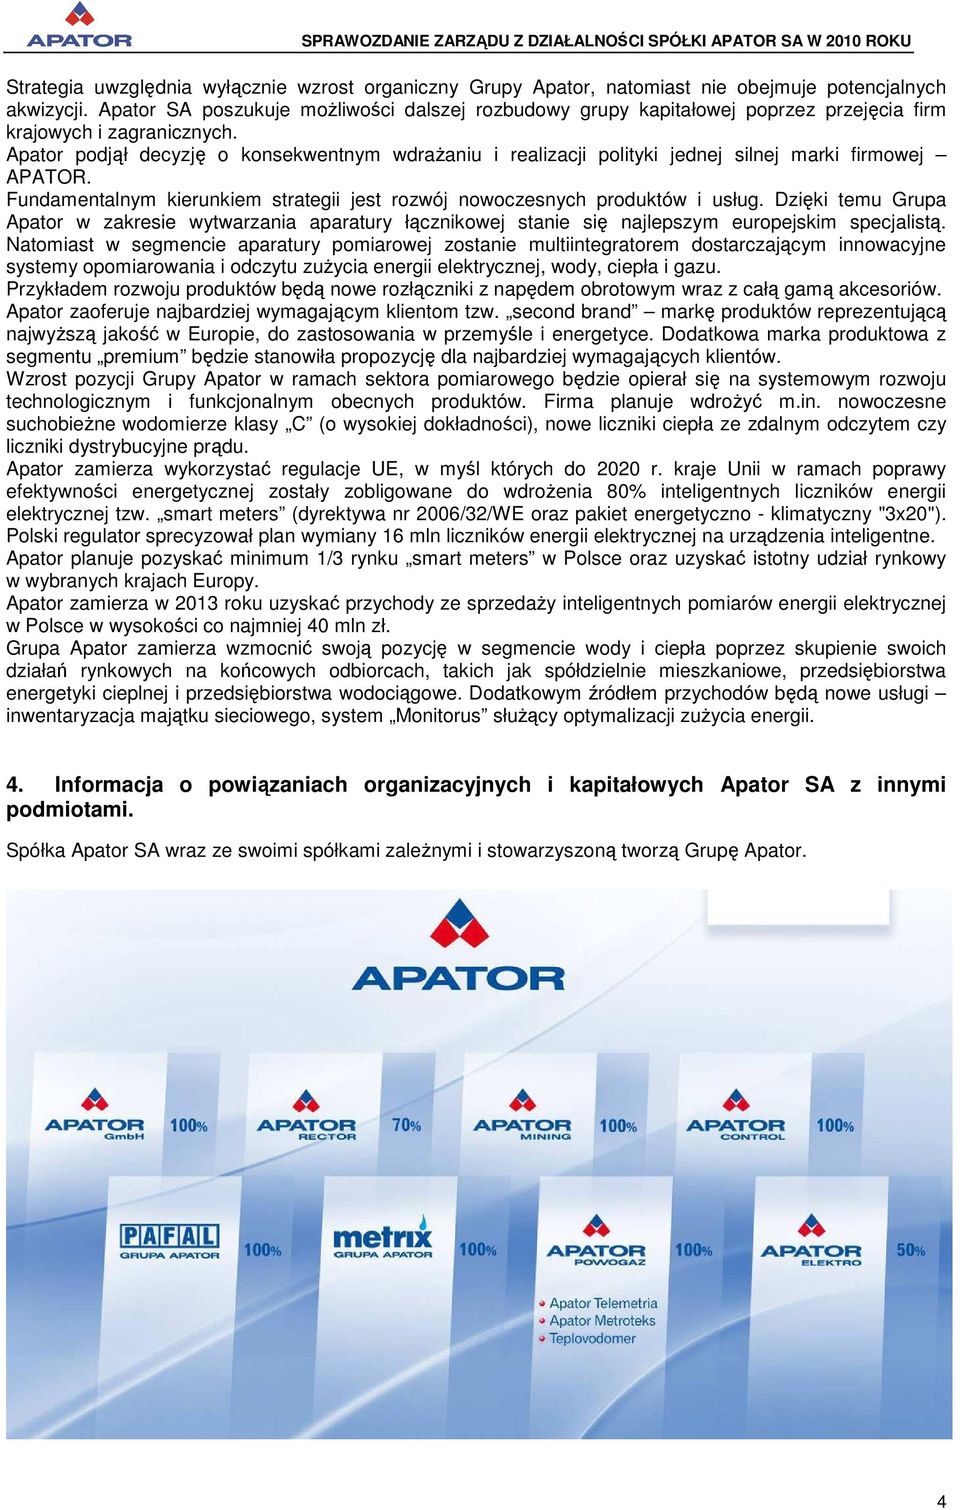 Apator podjął decyzję o konsekwentnym wdraŝaniu i realizacji polityki jednej silnej marki firmowej APATOR. Fundamentalnym kierunkiem strategii jest rozwój nowoczesnych produktów i usług.